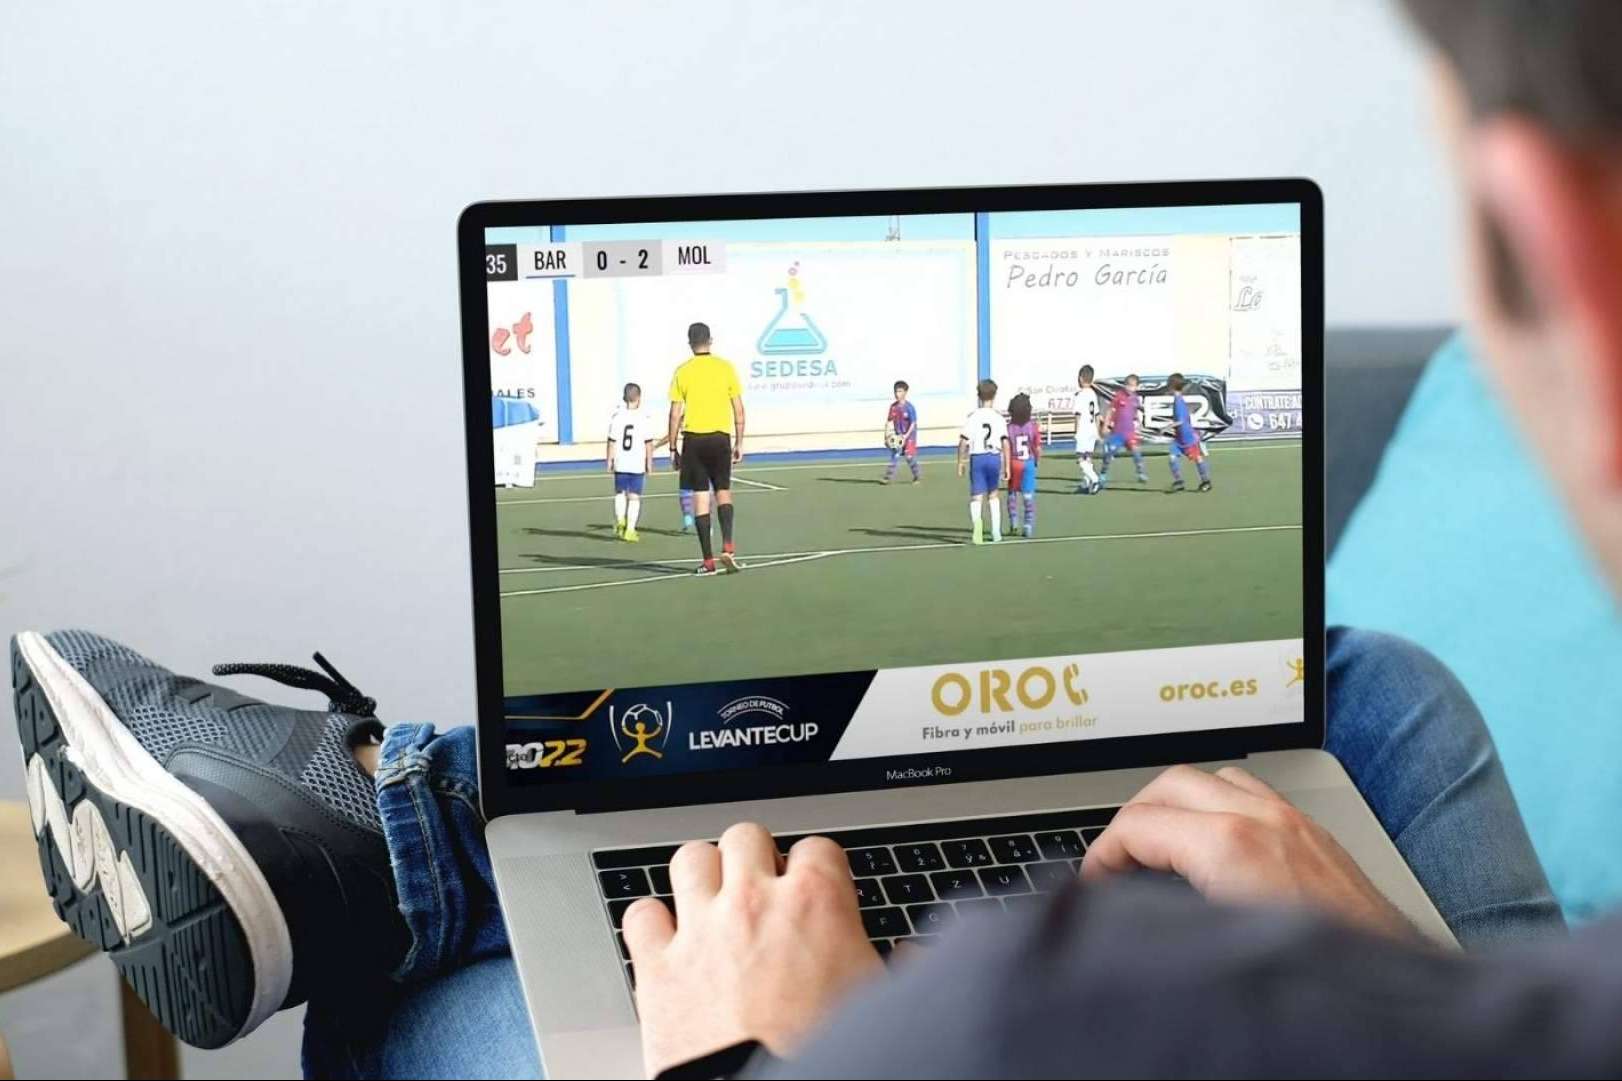 OROC, una de las compañías de móvil más conocidas, patrocina la Levante Cup